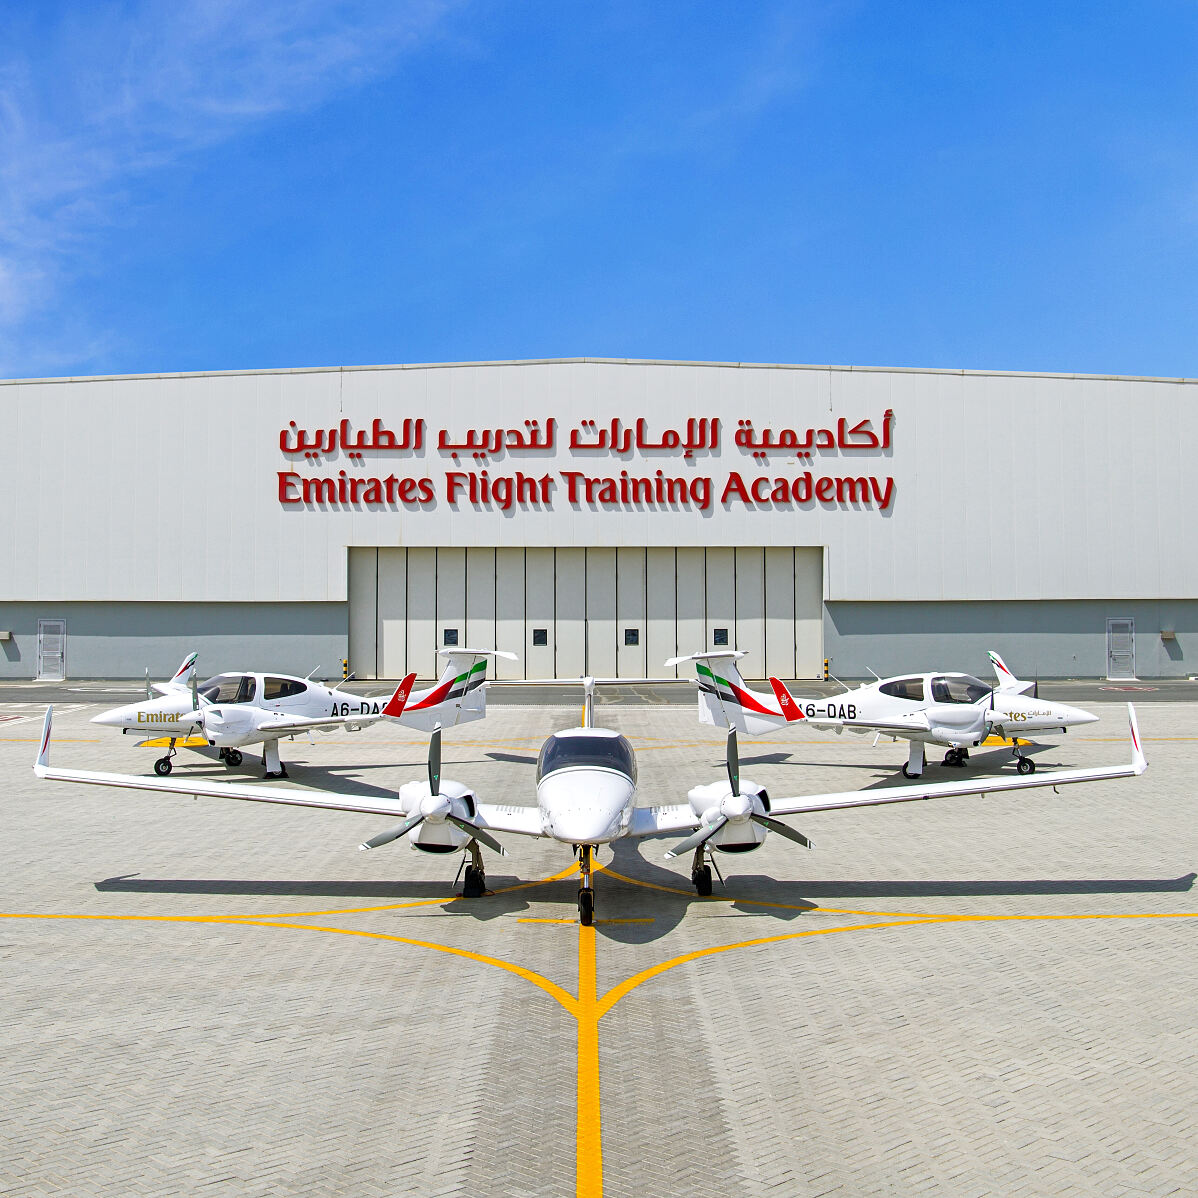 Österreichische Diamond-Flugzeuge im Einsatz in der Emirates Flight Training Academy